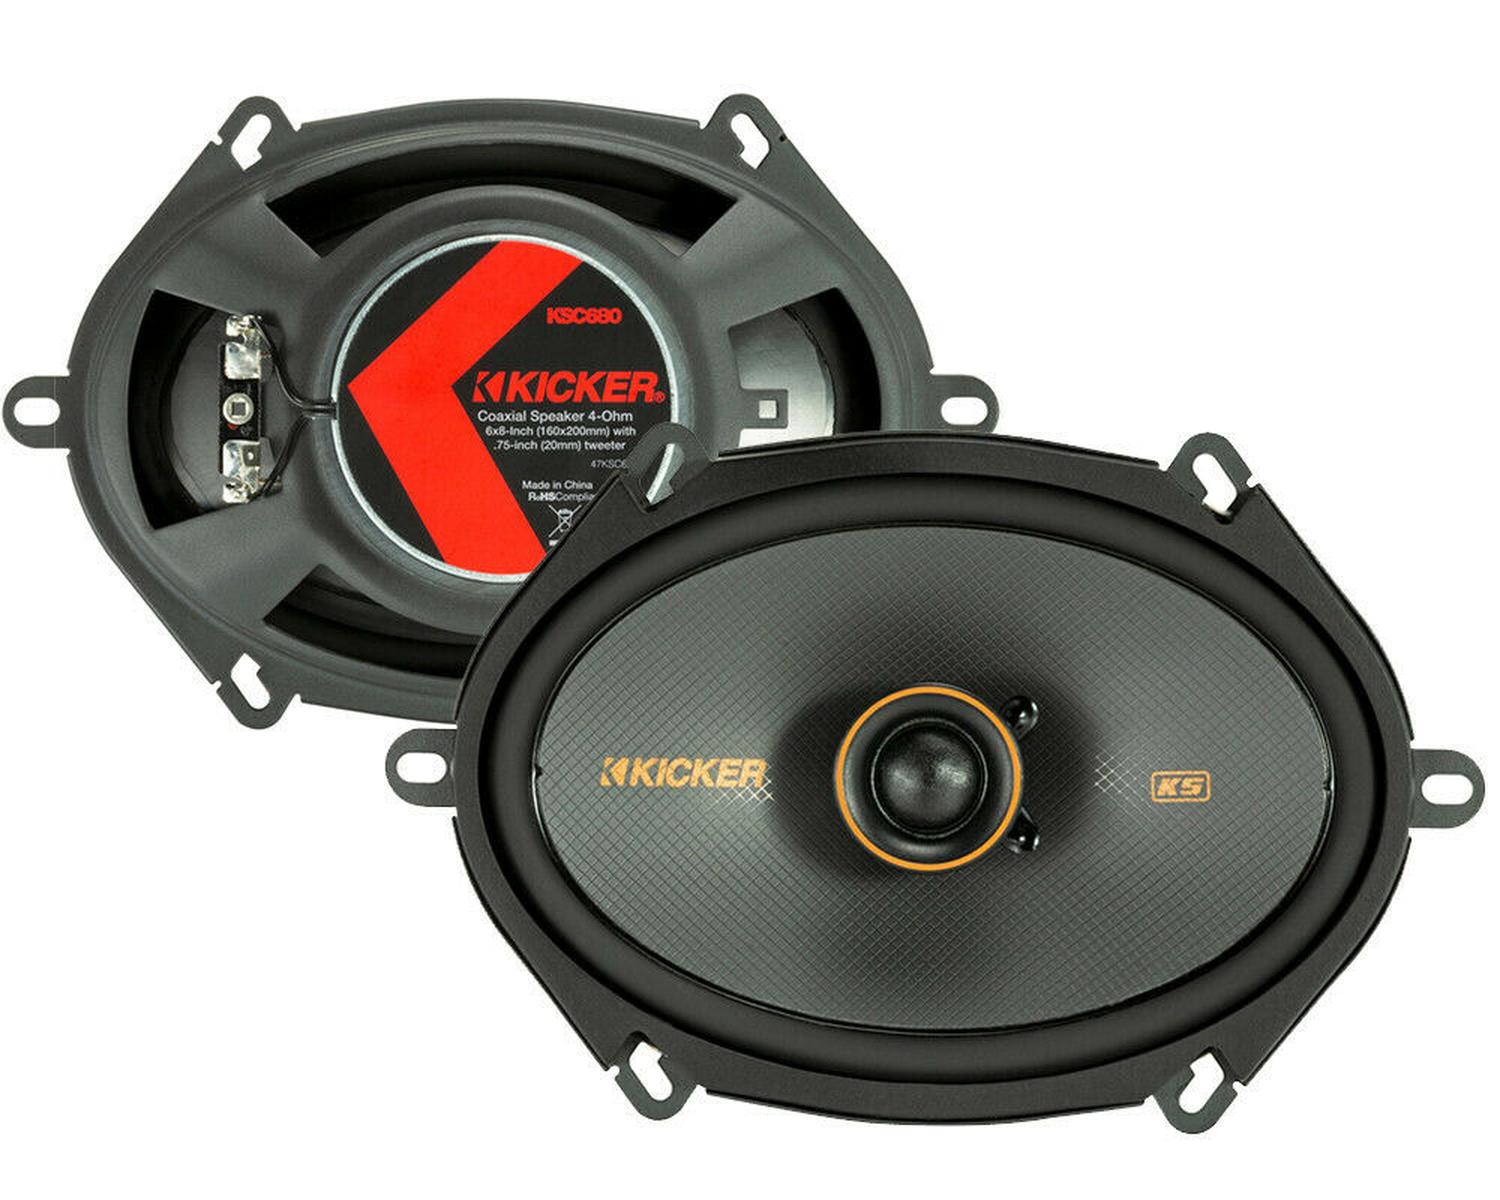 Bocinas Coaxiales Kicker KSC680 150 Watts 6x8 Pulgadas 4 Ohms 75 Watts RMS 2 Vías - Audioshop México lo mejor en Car Audio en México -  Kicker